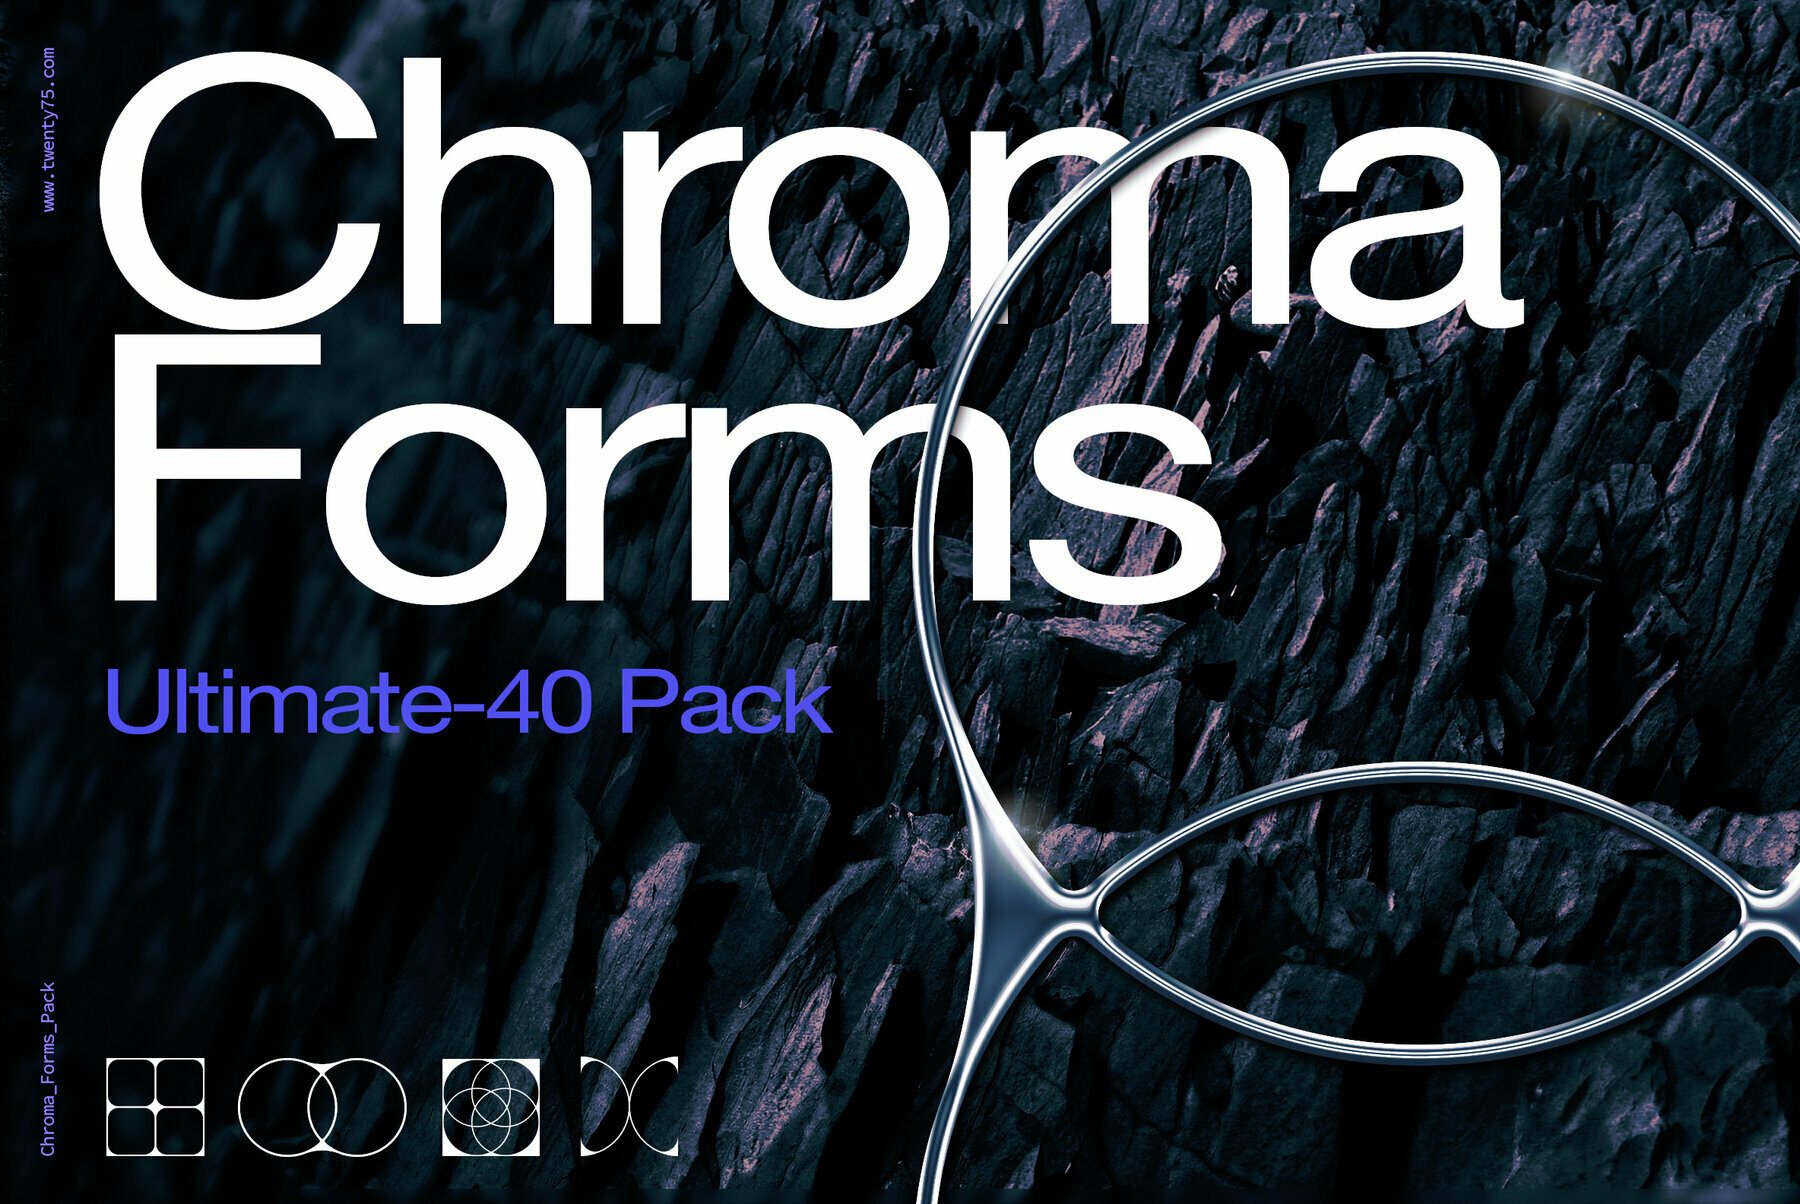 40款潮流3D镀铬金属光泽效果几何图标设计PS样式模板素材 Chroma Forms Ultimate-40 Pack